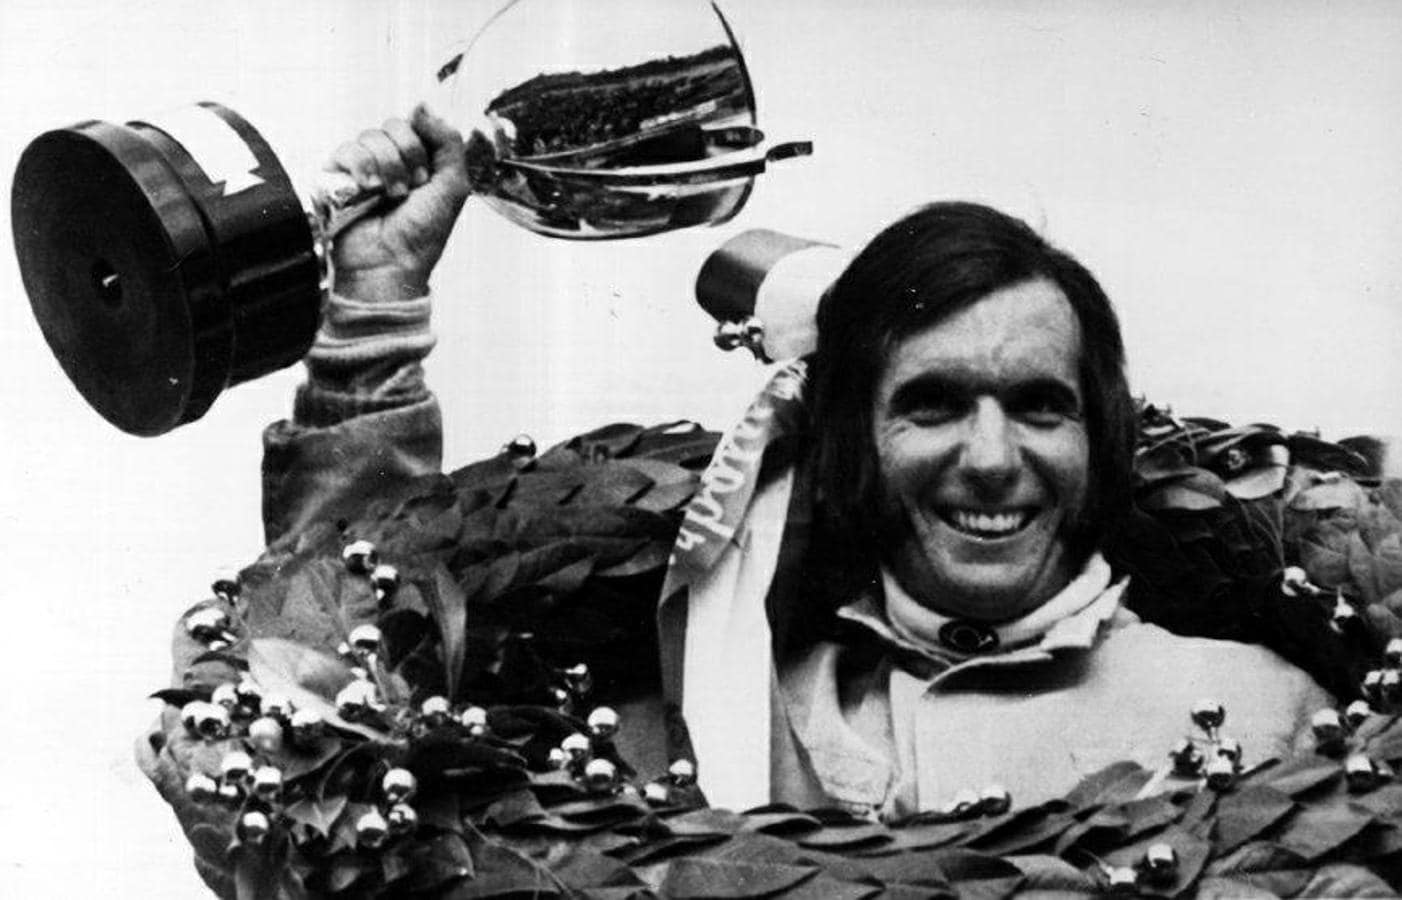 El brasileño Emerson Fittipaldi ganó dos títulos mundiales (1972 y 1974) y desde entonces fue sinónimo de velocidad en España